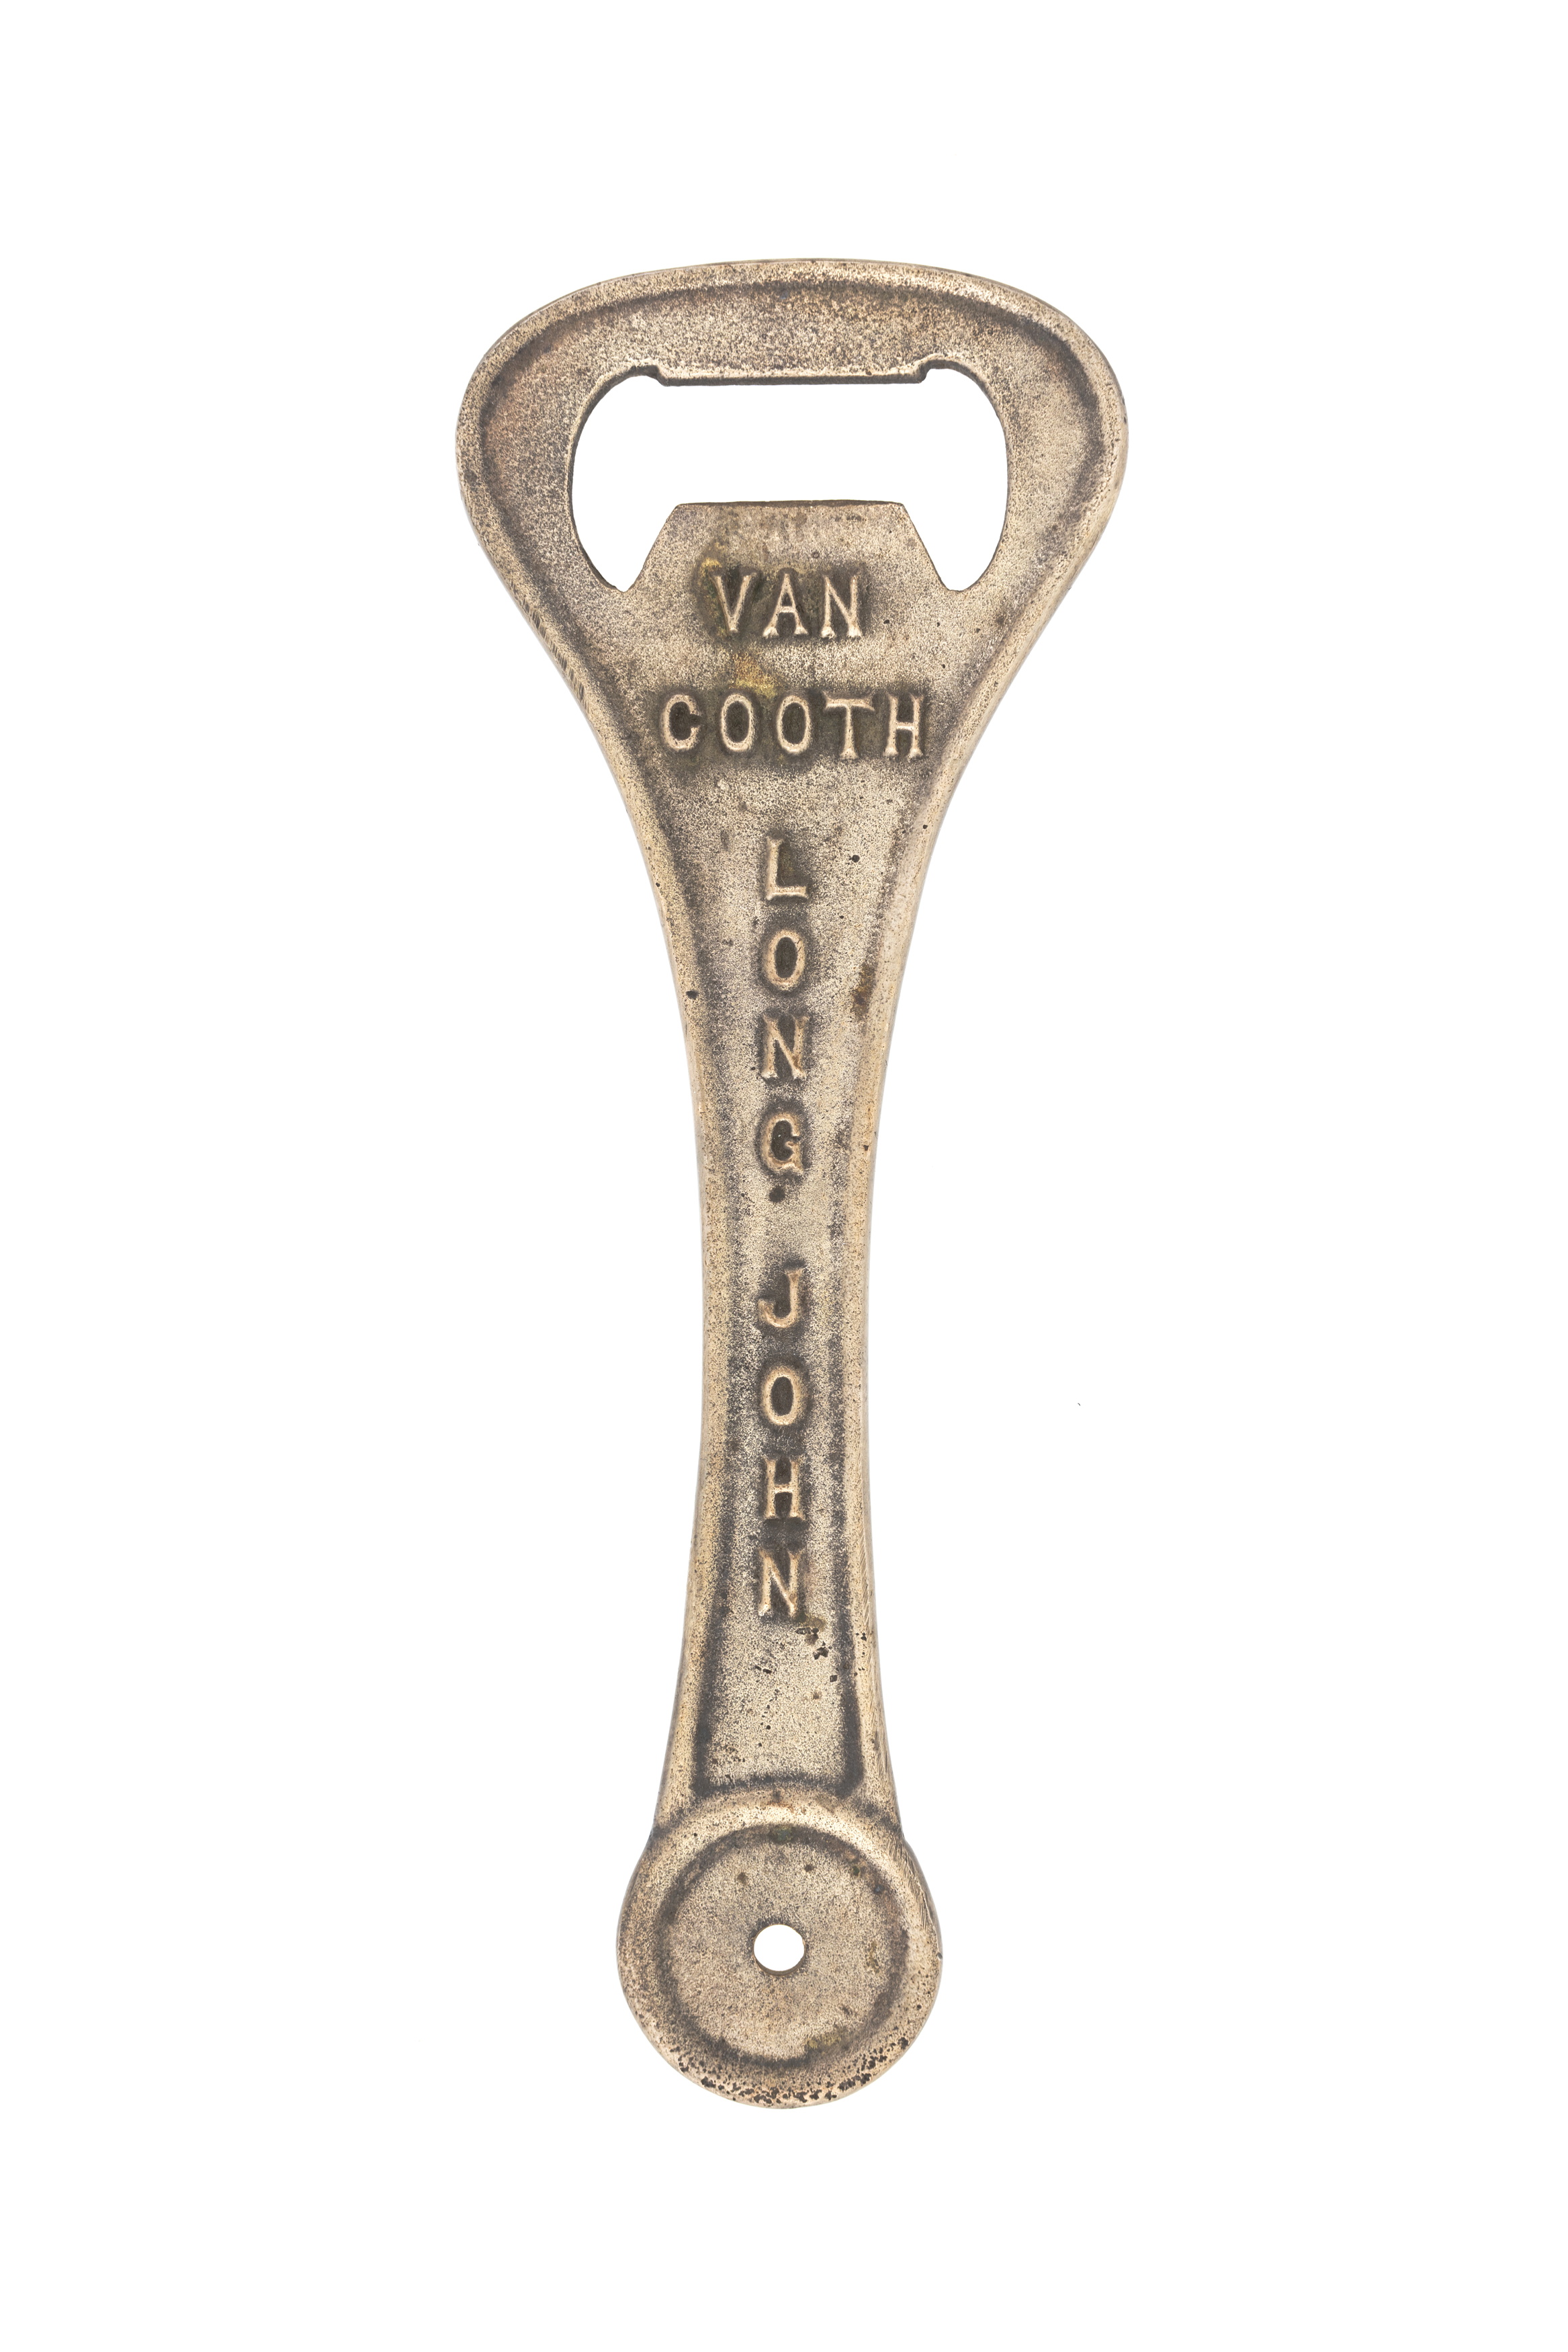 Van Cooth bottle opener